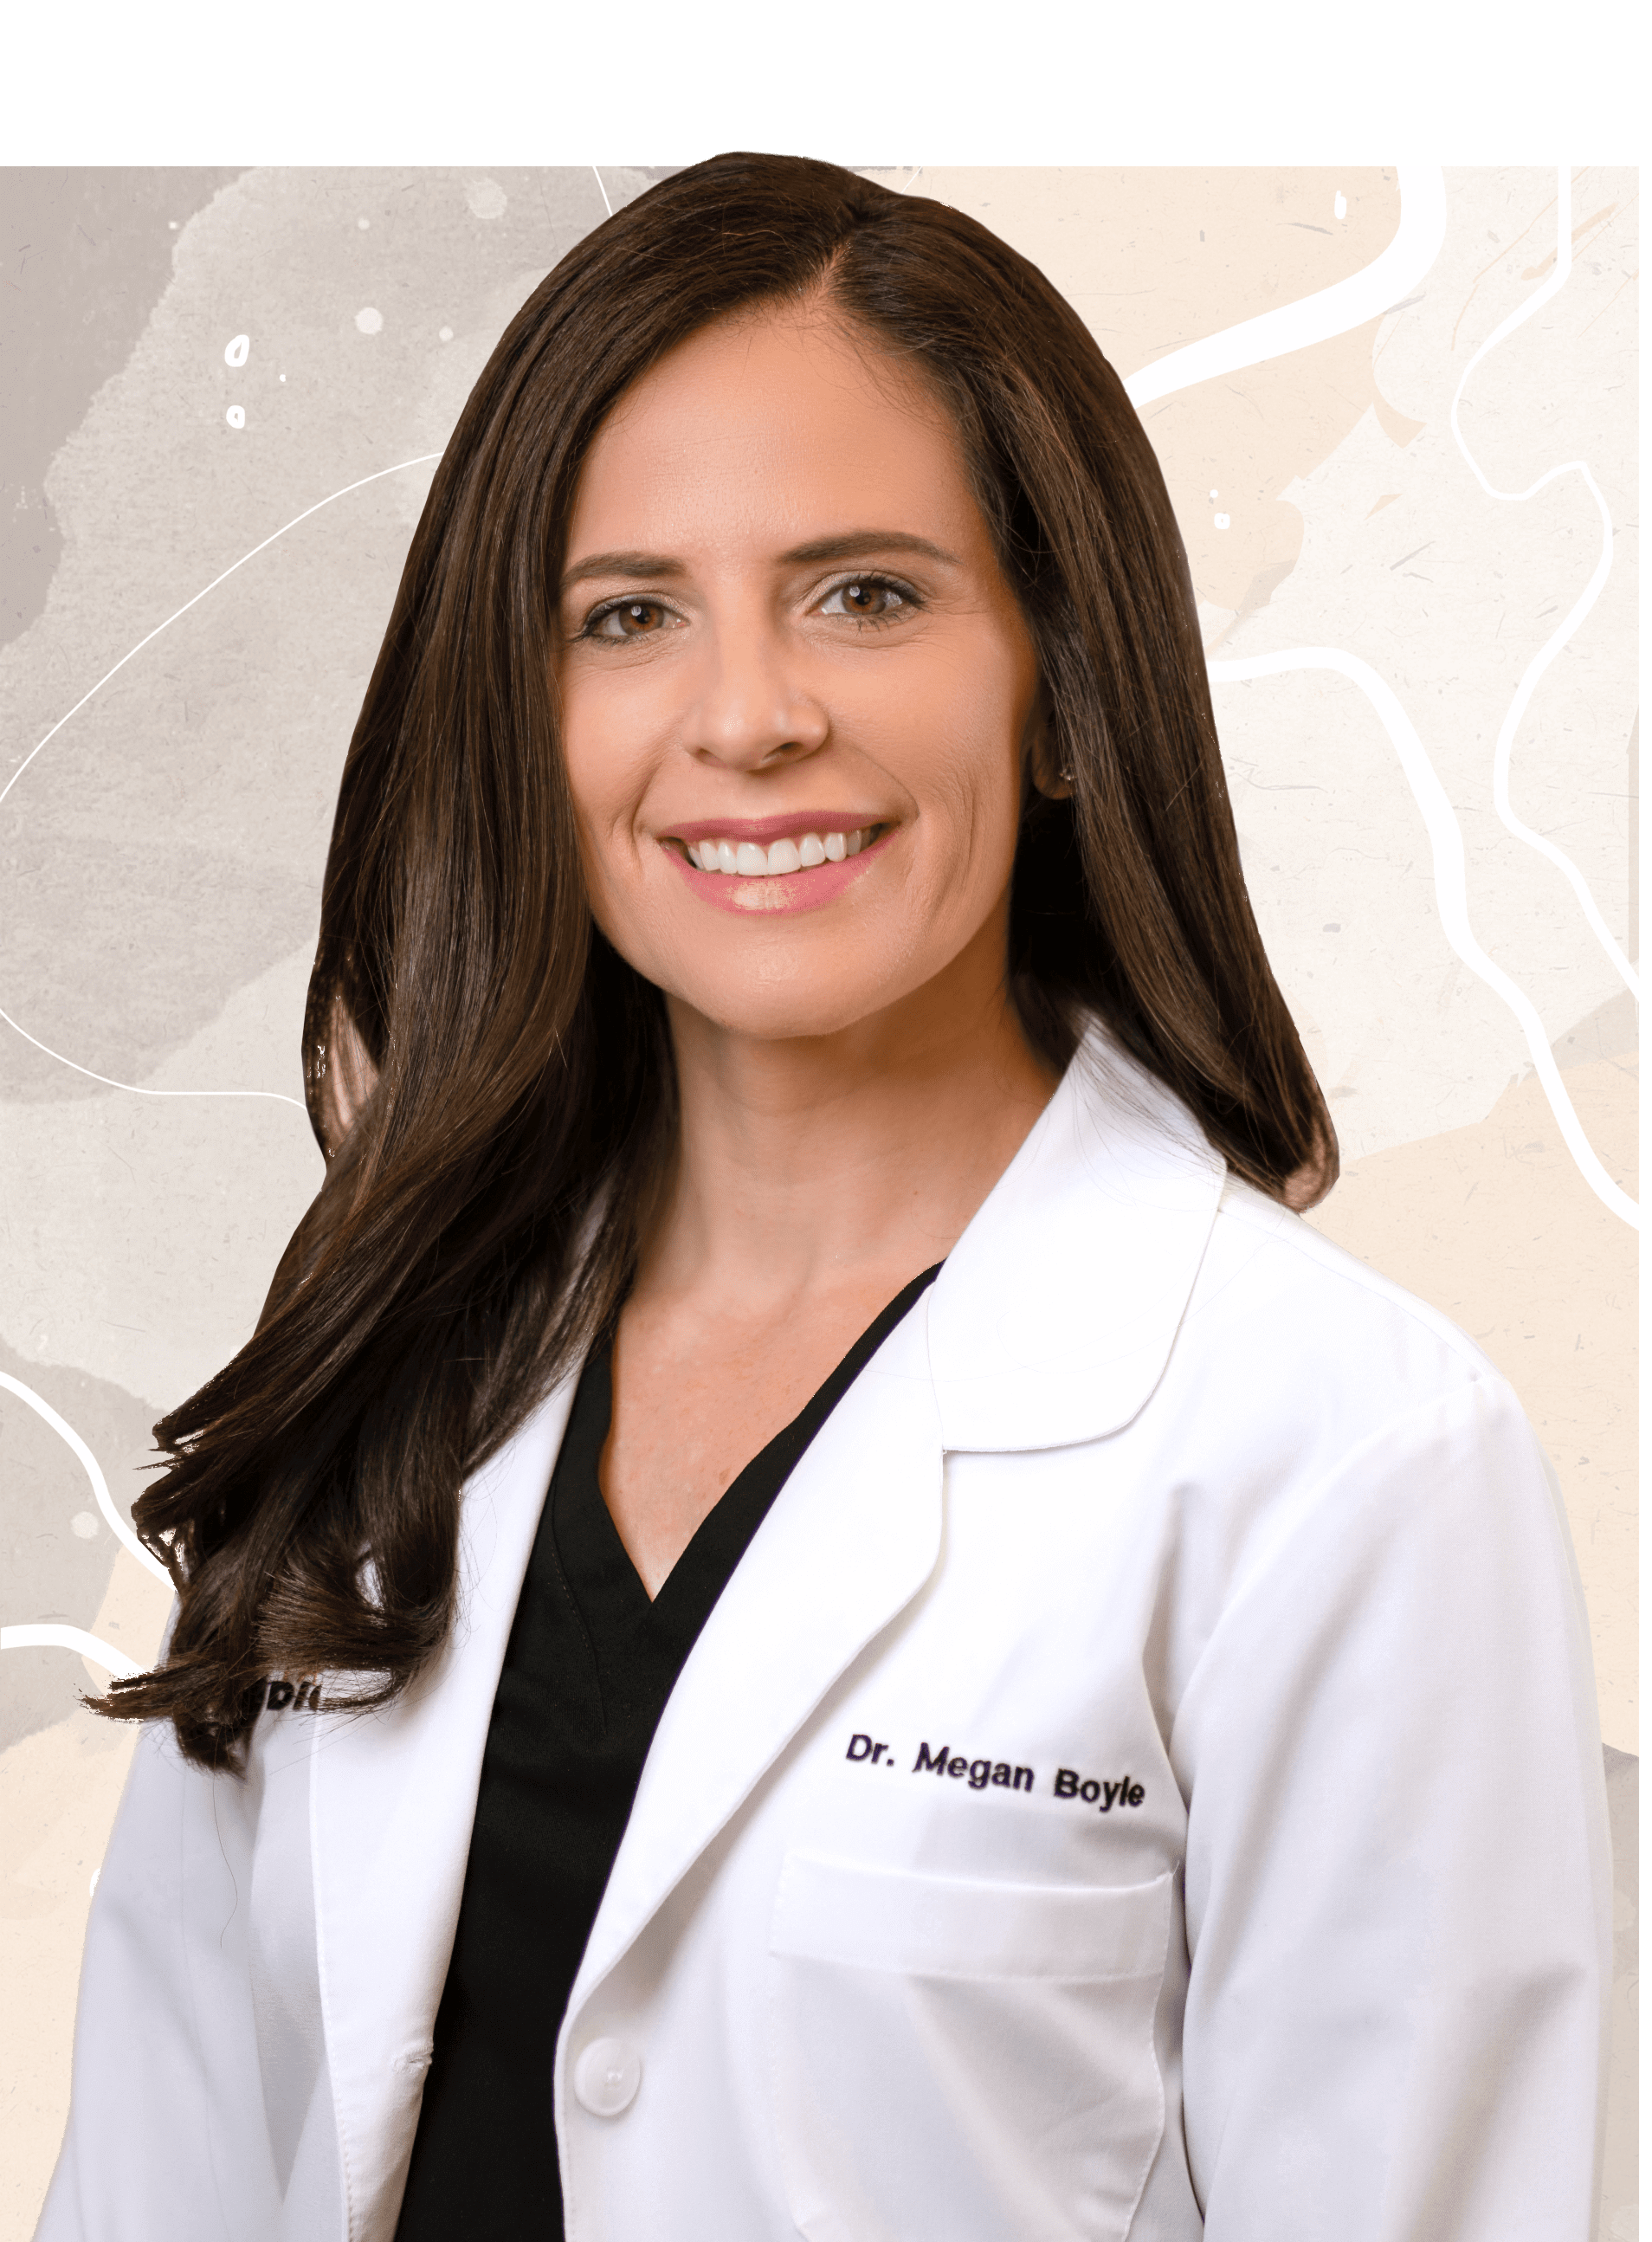 About Dr. Megan Peterson Boyle